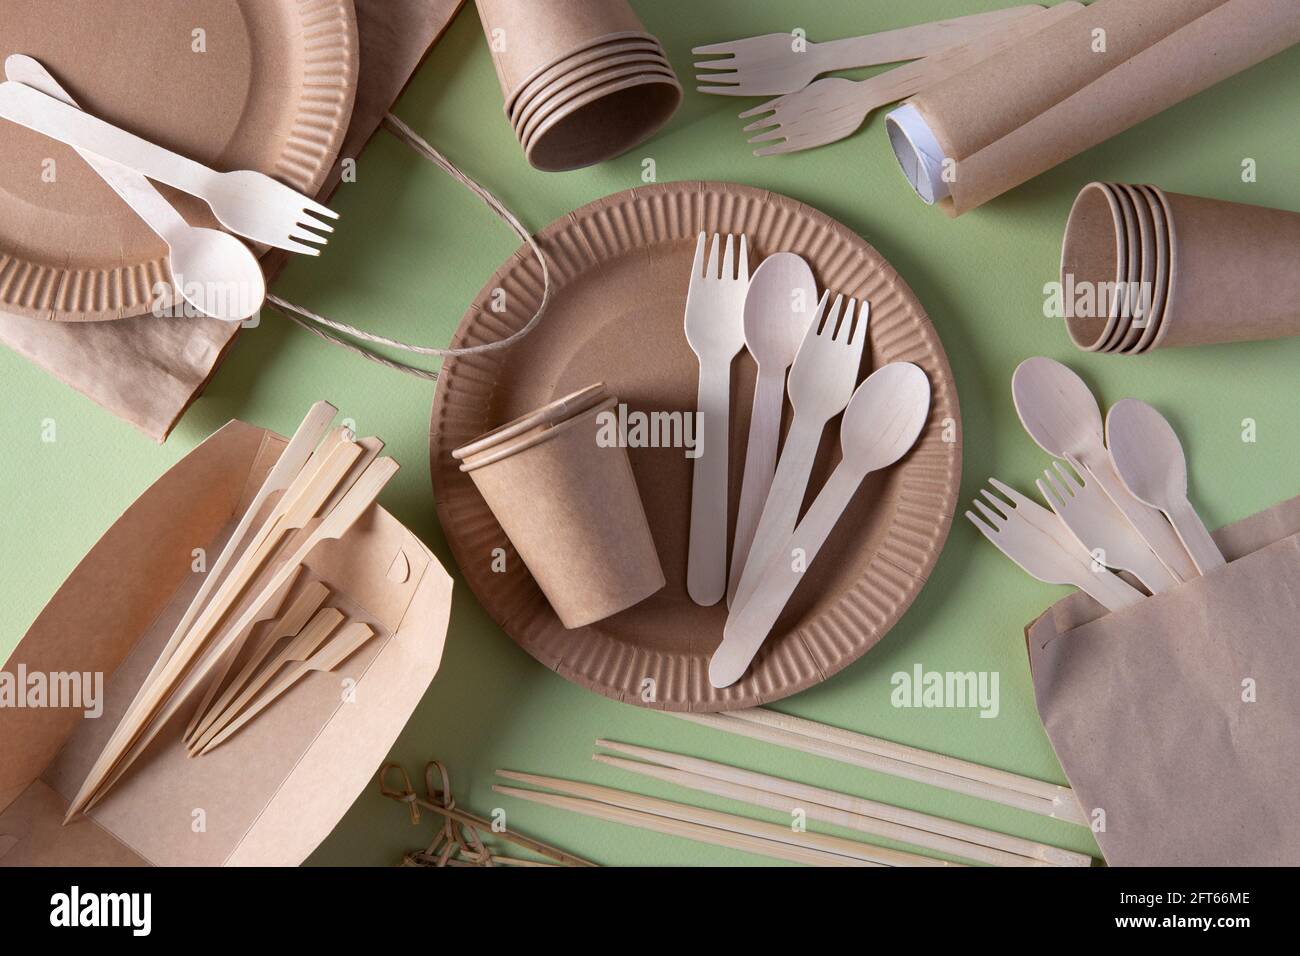 Vaisselle biodégradable jetable sur des assiettes en papier artisanal -  fourchettes, cuillères, verres, brochettes en bois et bambou, bâtonnets de  sushi, parchemin. Zéro déchet Photo Stock - Alamy